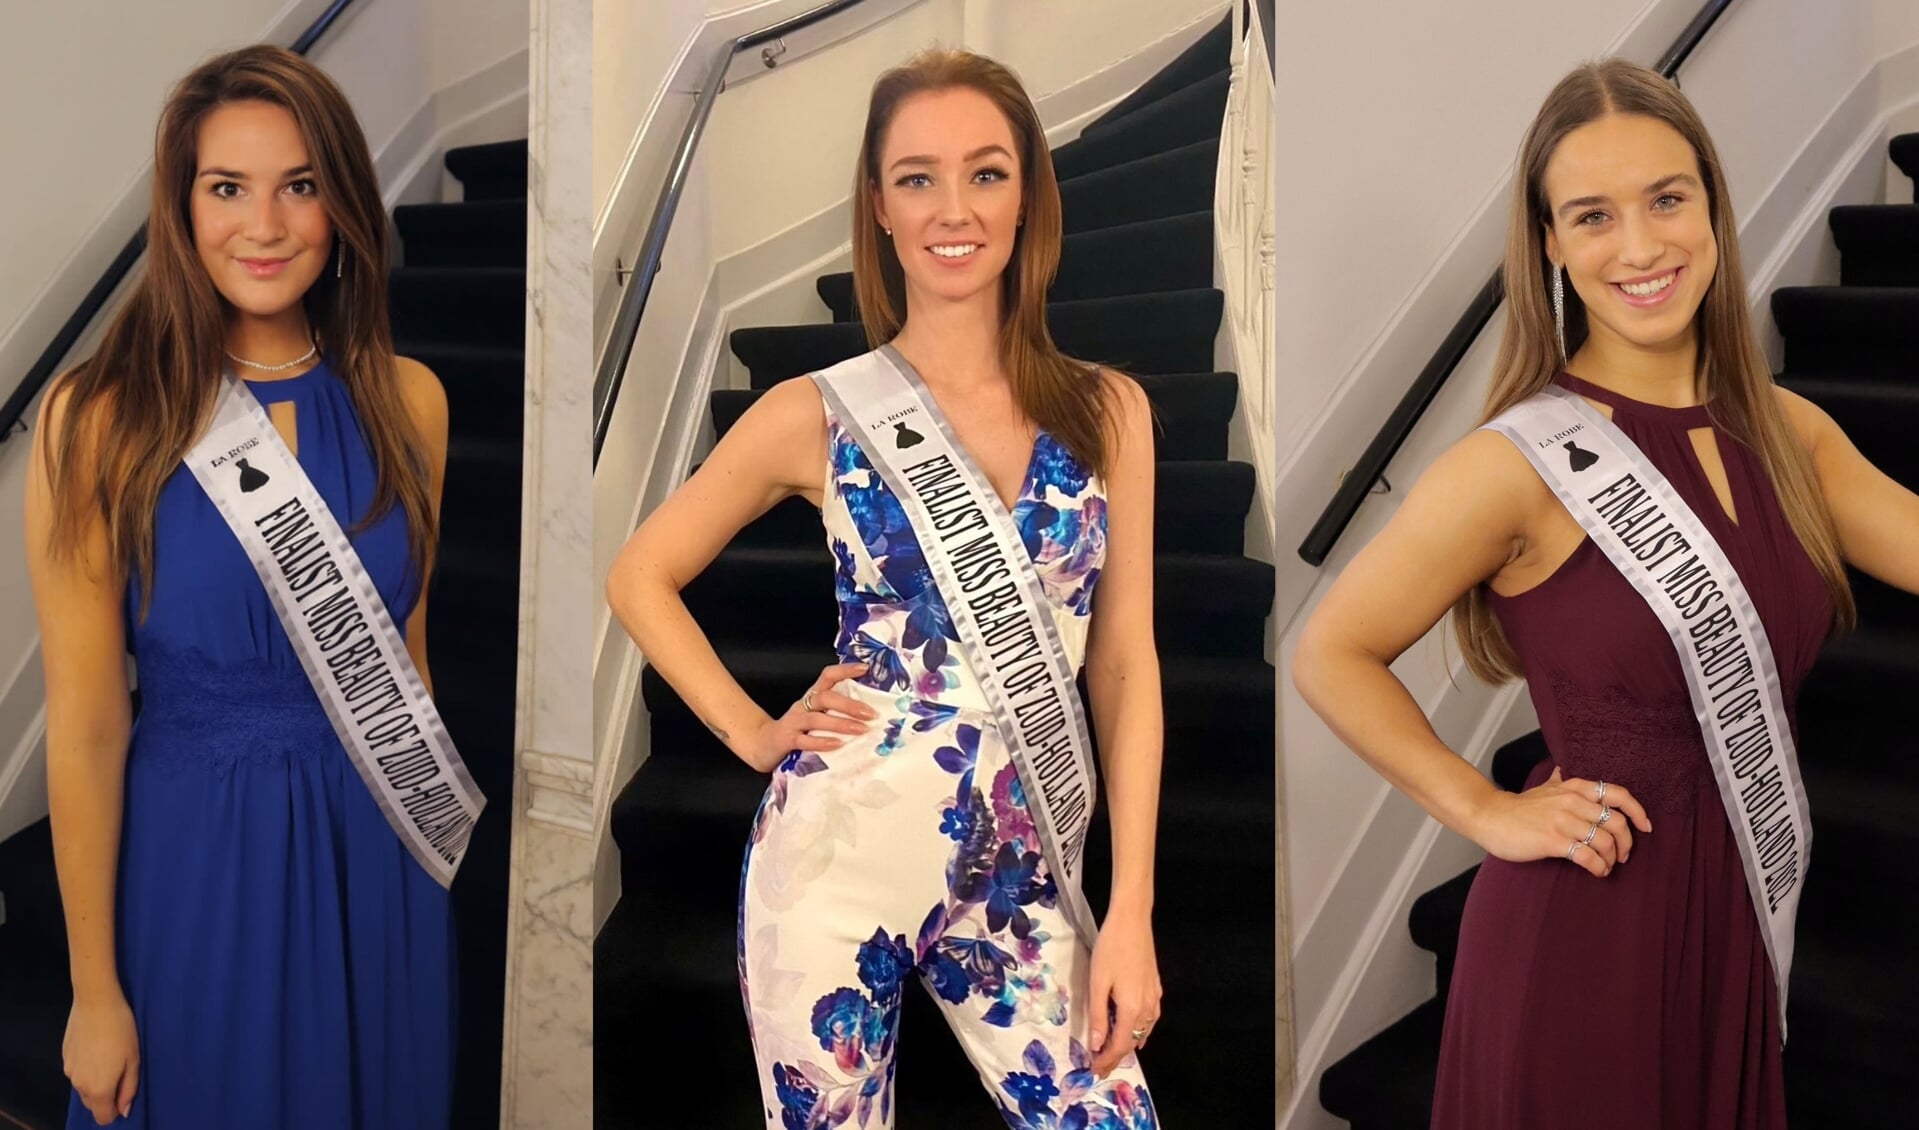 Drie deelneemsters aan de Miss Beauty of Zuid-Holland-verkiezing uit Pijnacker: Hannah de Bruin, Wendy Groenewegen en Luca Schalkwijk.